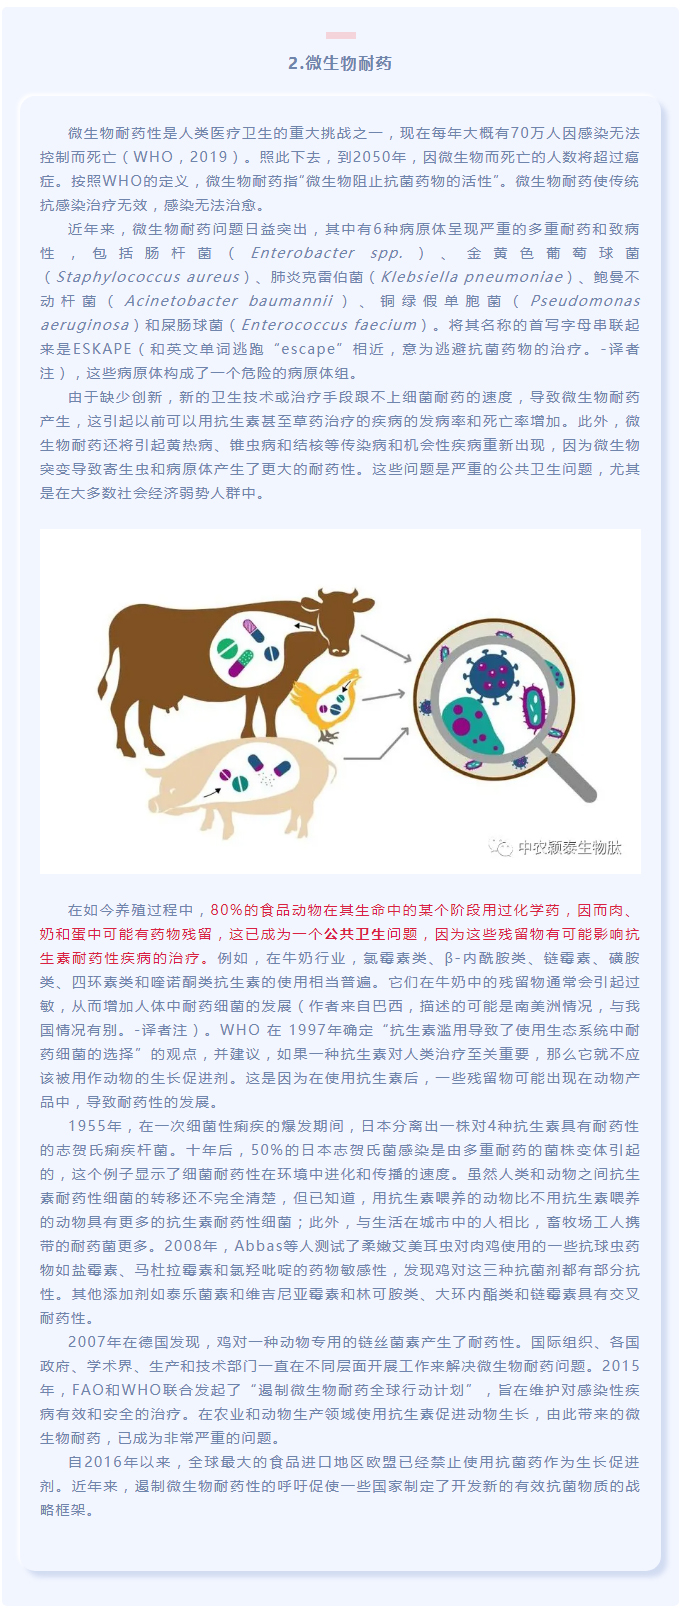 抗菌肽作为替抗饲料添加剂对动物生产、食品安全和公共卫生影响的综述（上）_02